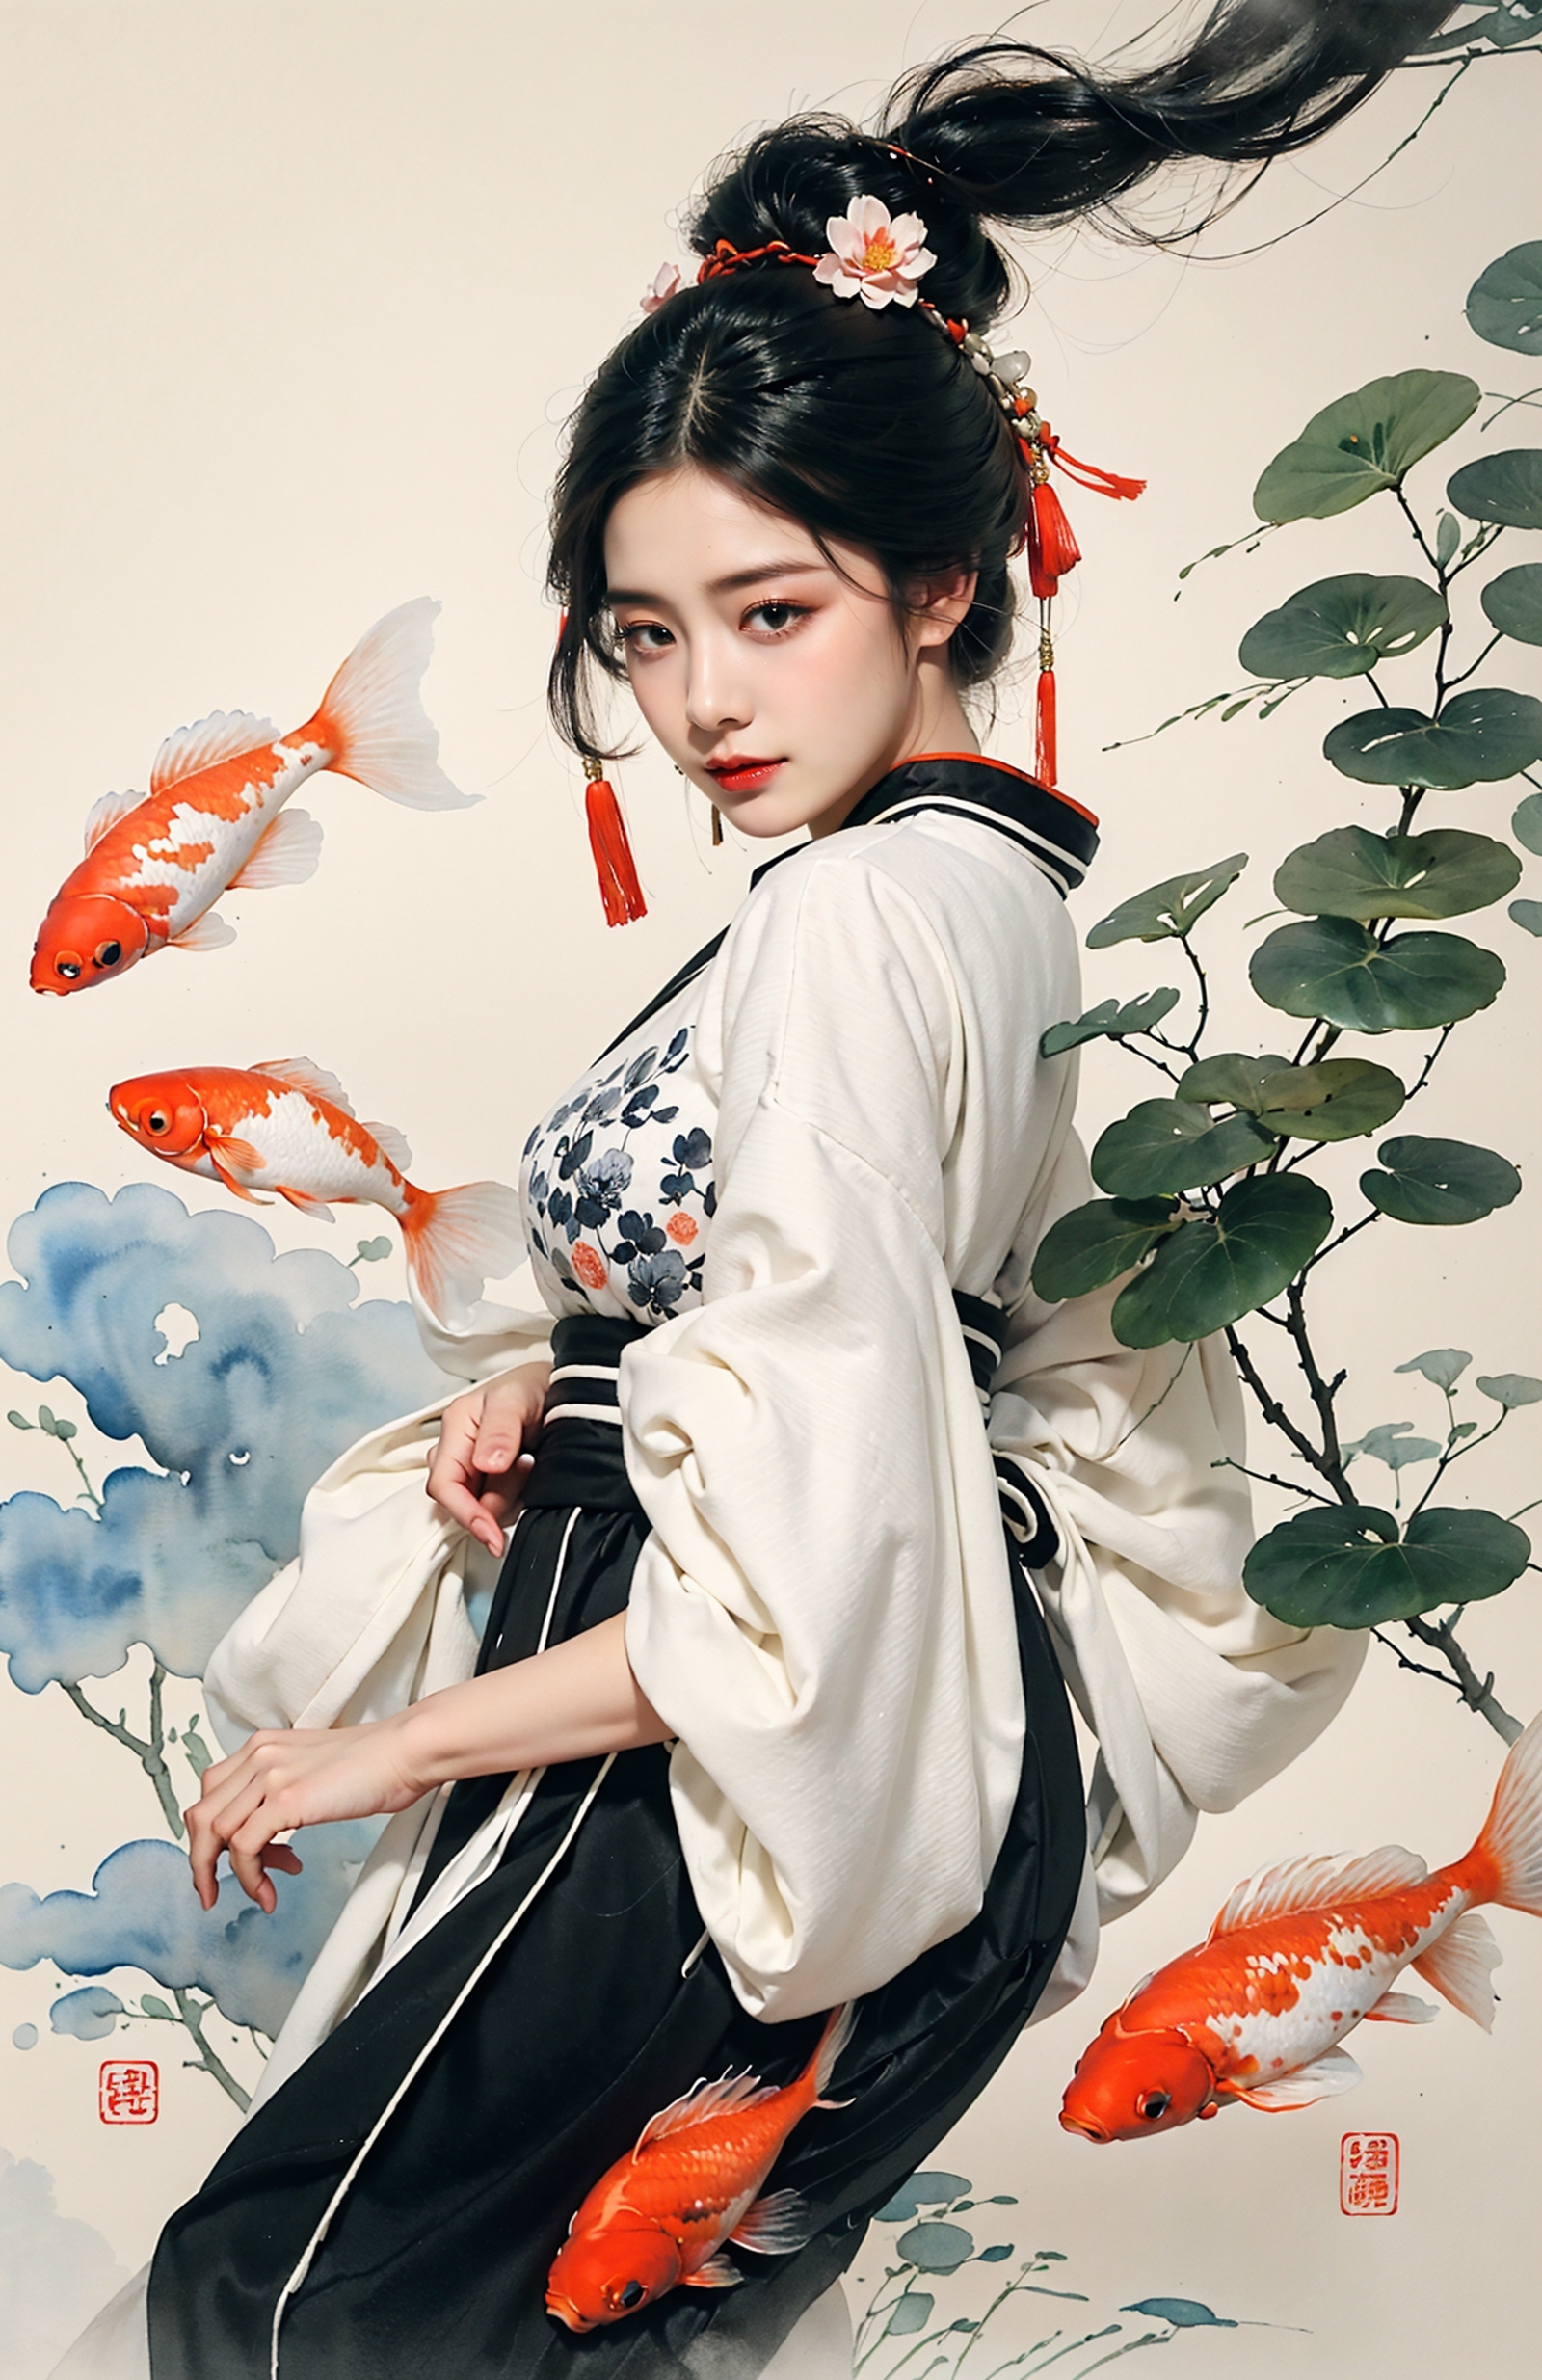 绪儿-水墨鱼fish image by XRYCJ